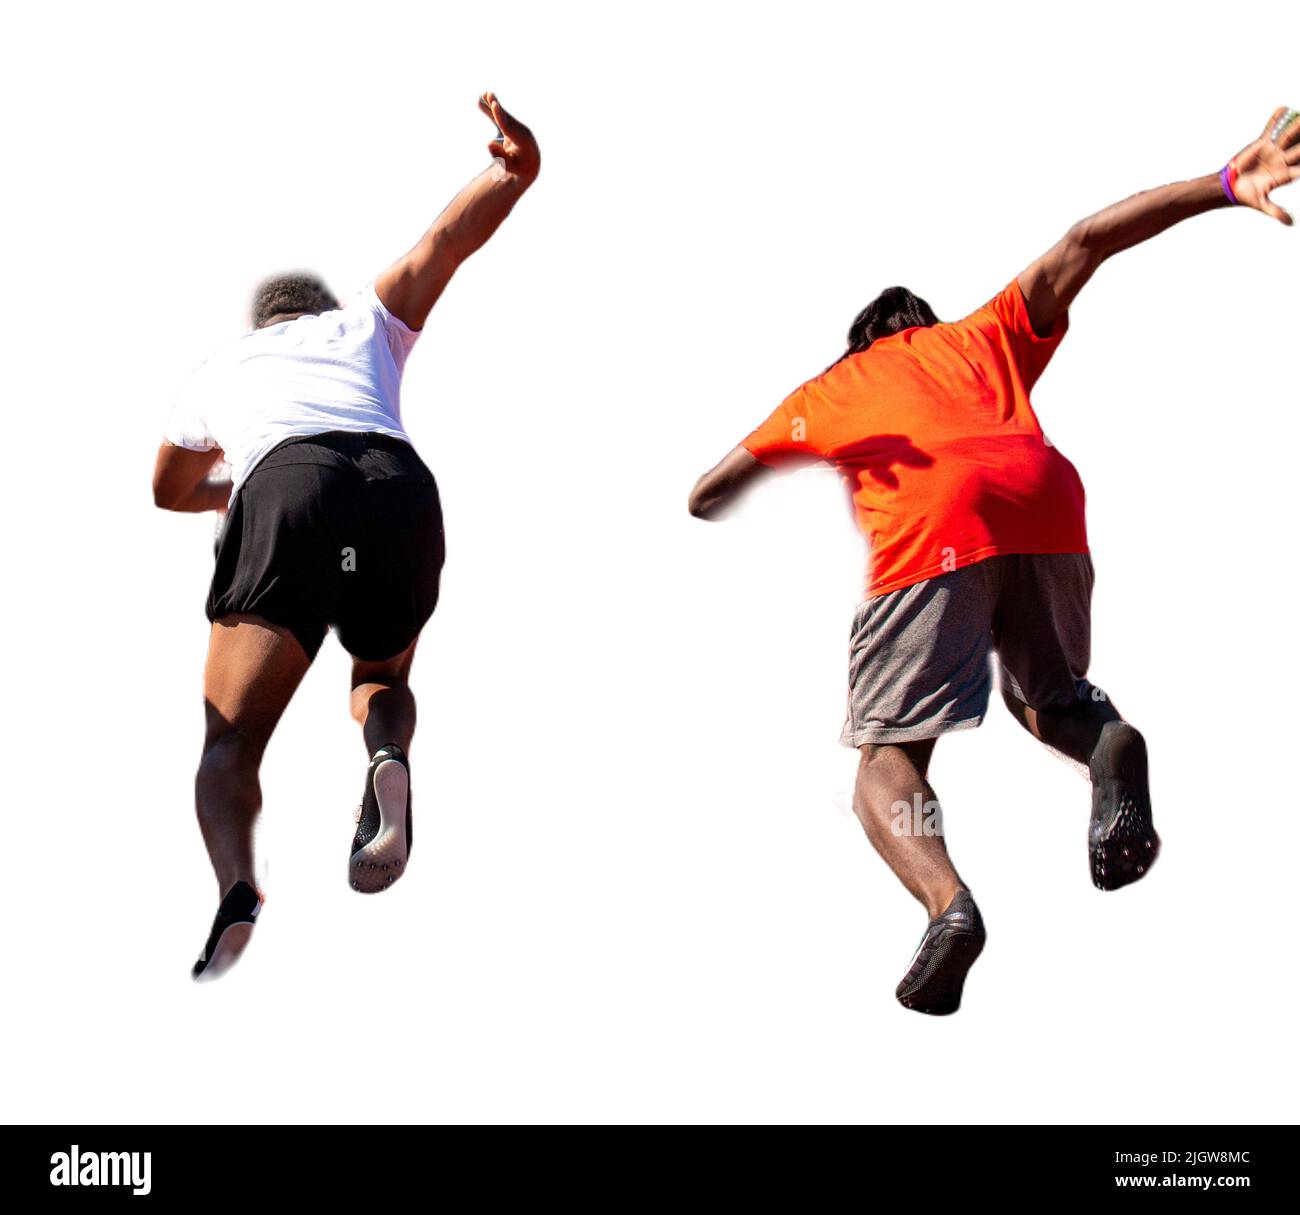 Rückansicht von zwei High-School-Jungen, die beim Training auf der Rennstrecke einen 100-Meter-Strich fahren. Stockfoto